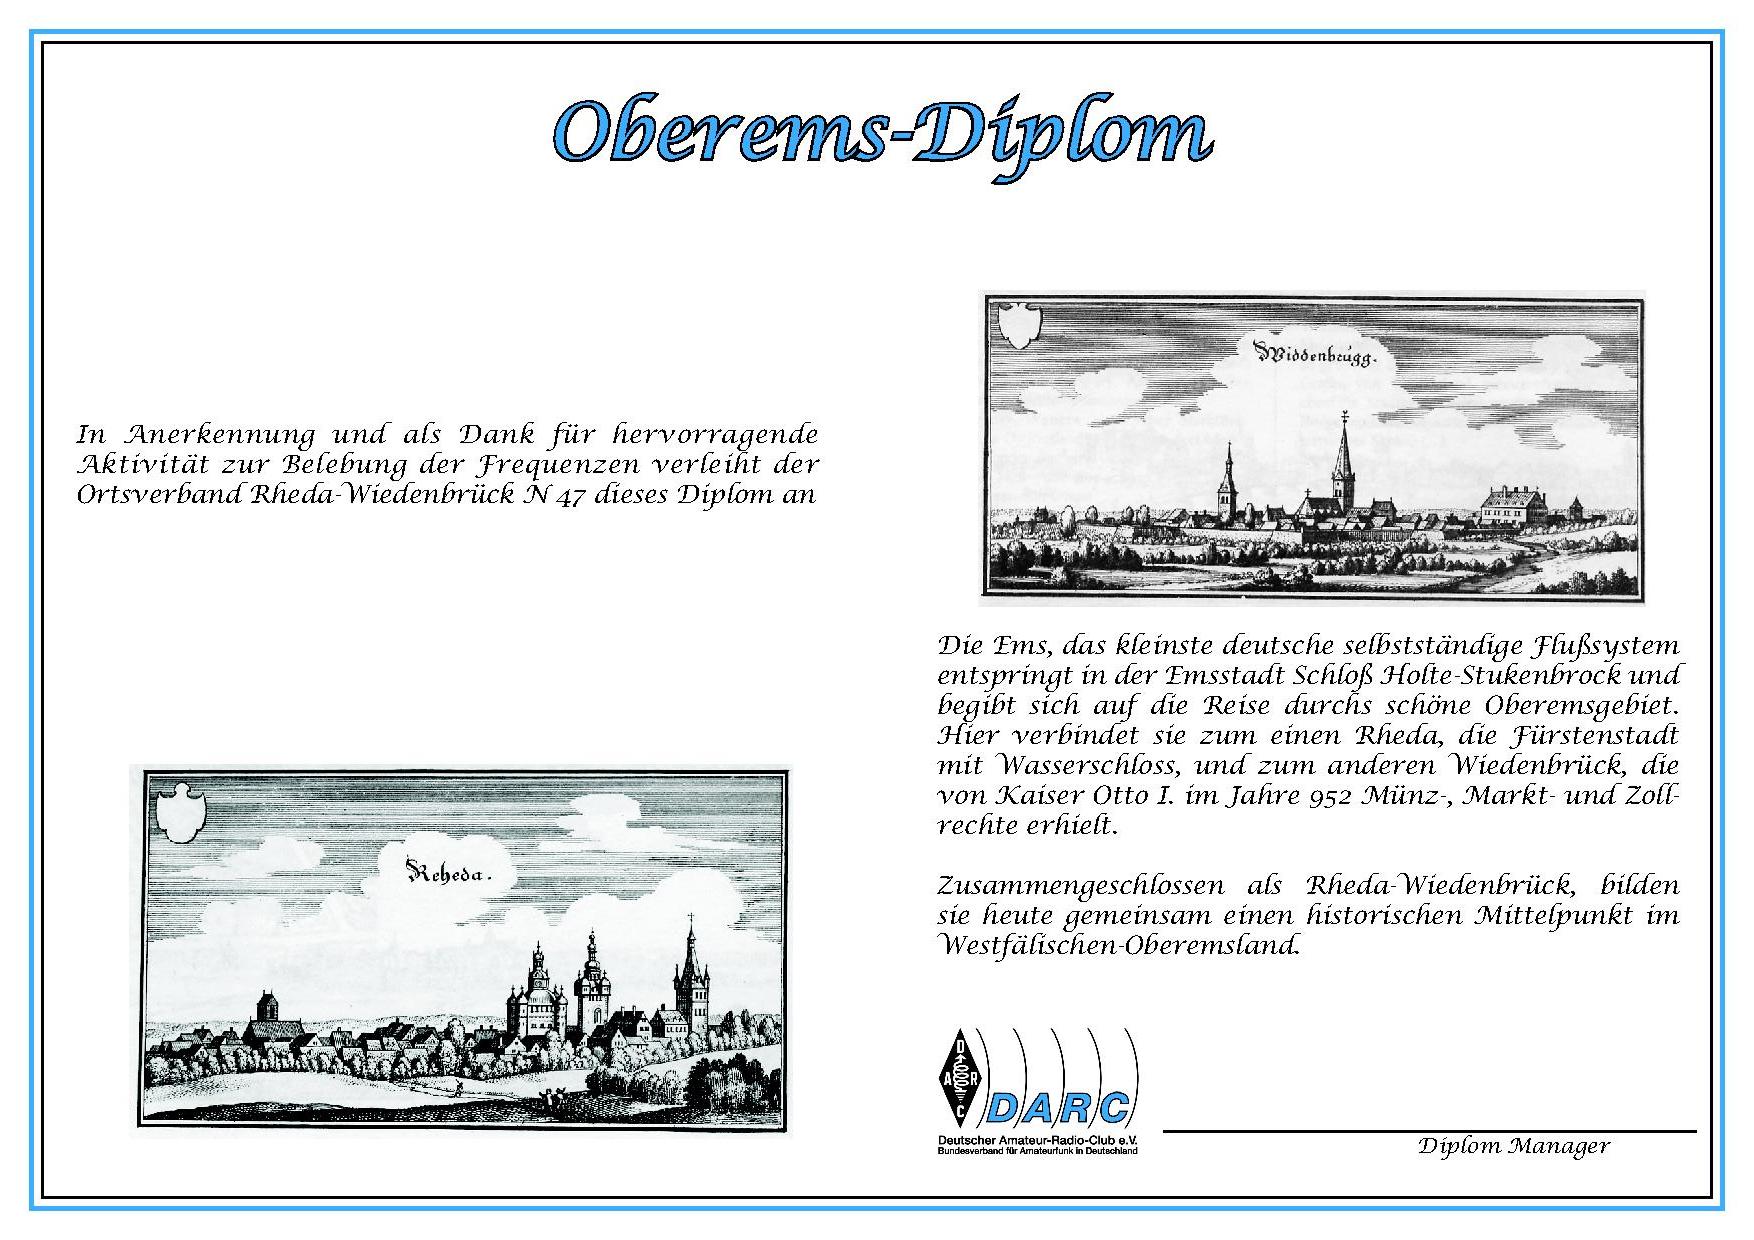 Oberems-Diplom